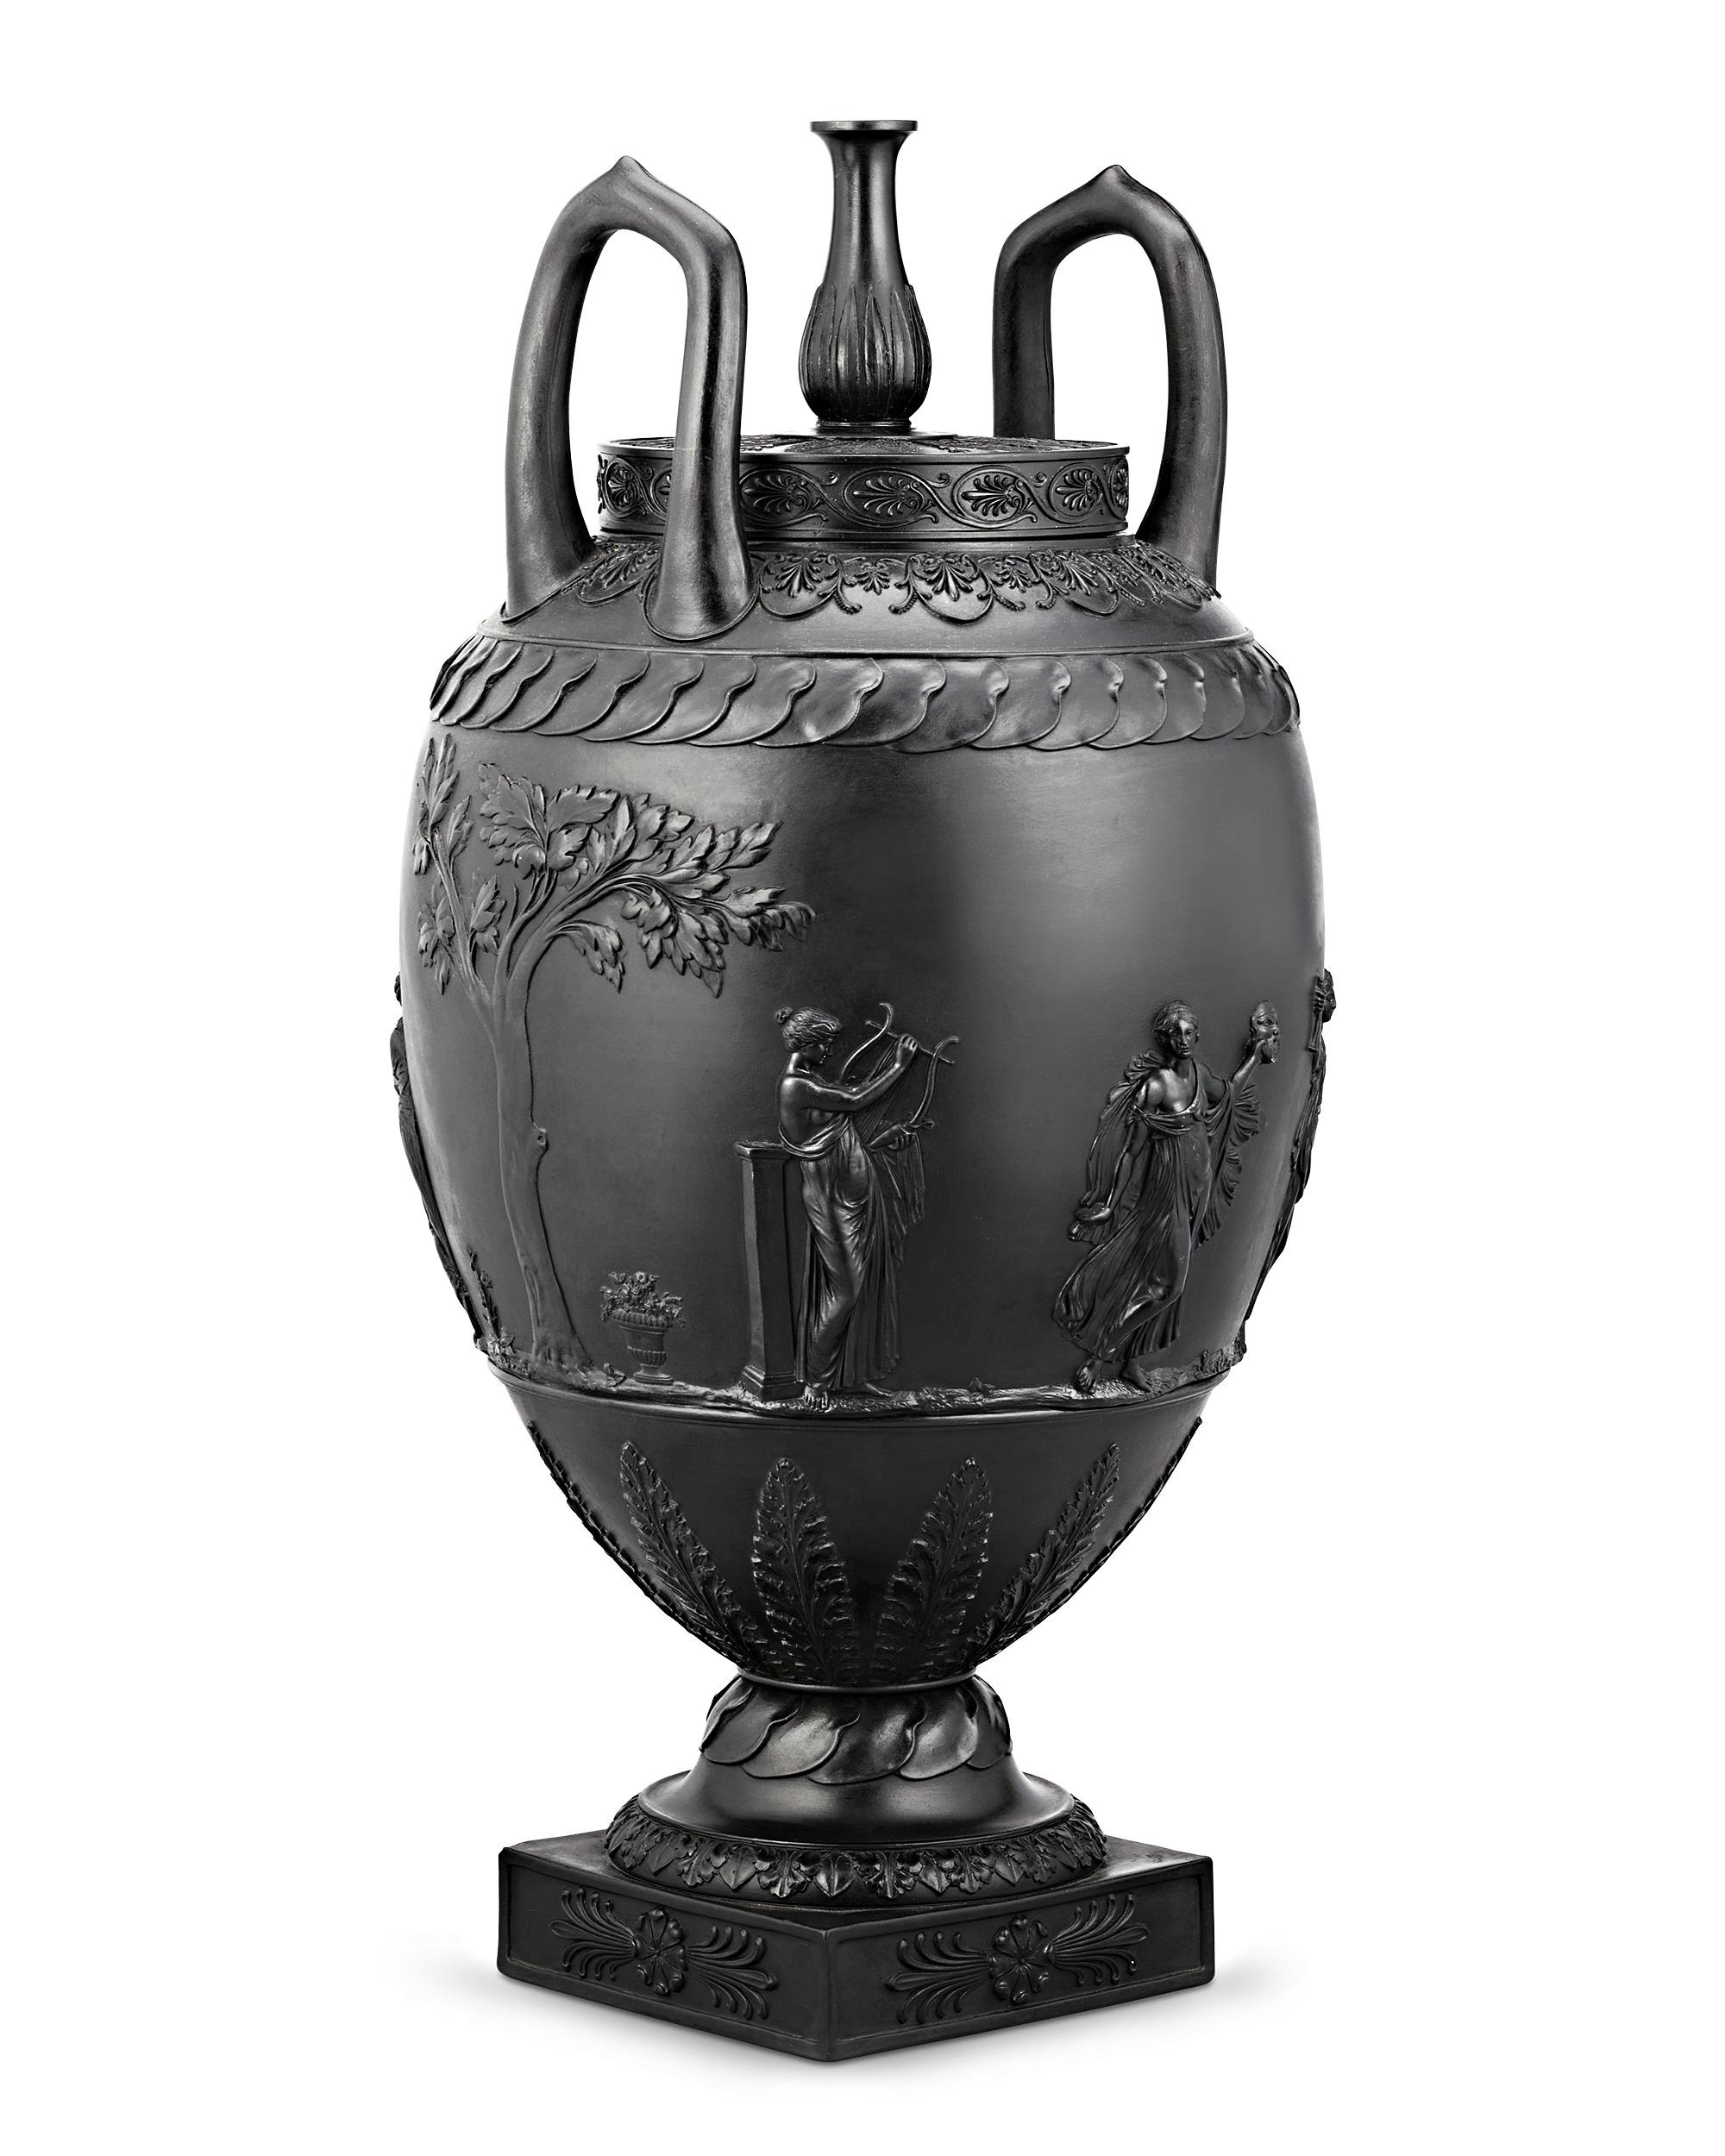 Ein bemerkenswertes Beispiel für Josiah Wedgwoods legendäre Keramikkunst. Die Bedeutung und Seltenheit dieser Urnenvase kann gar nicht hoch genug eingeschätzt werden. Schwarzer Basalt bezieht sich auf das von Josiah Wedgwood in den 1760er Jahren